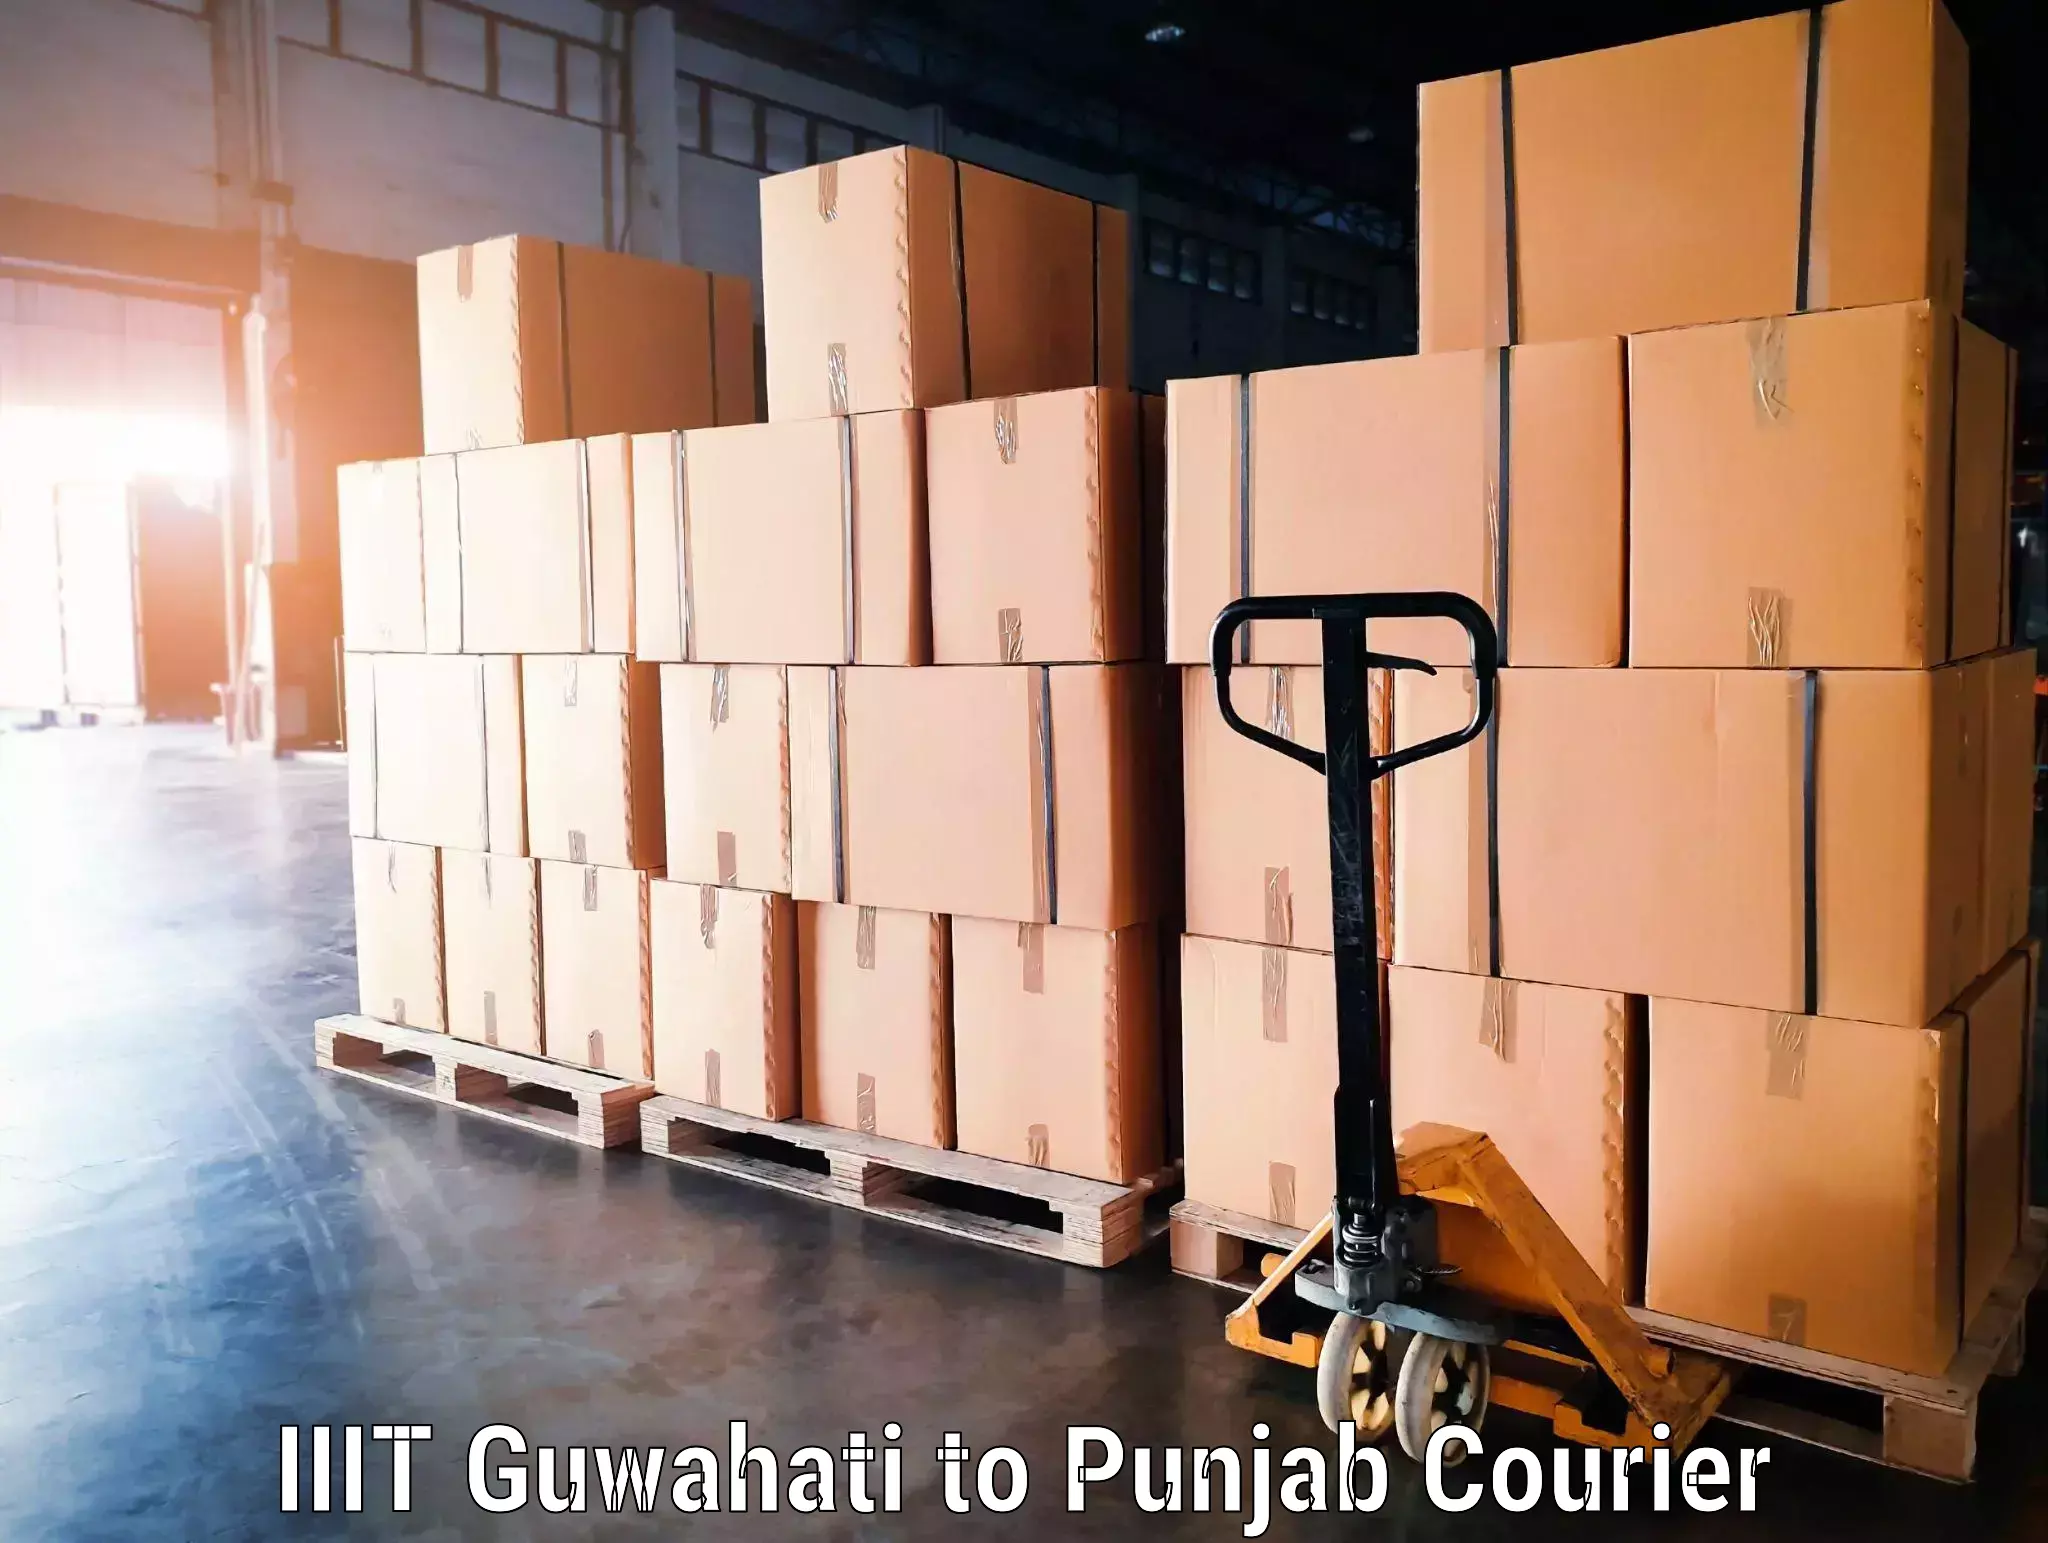 Luggage transport operations in IIIT Guwahati to Punjab